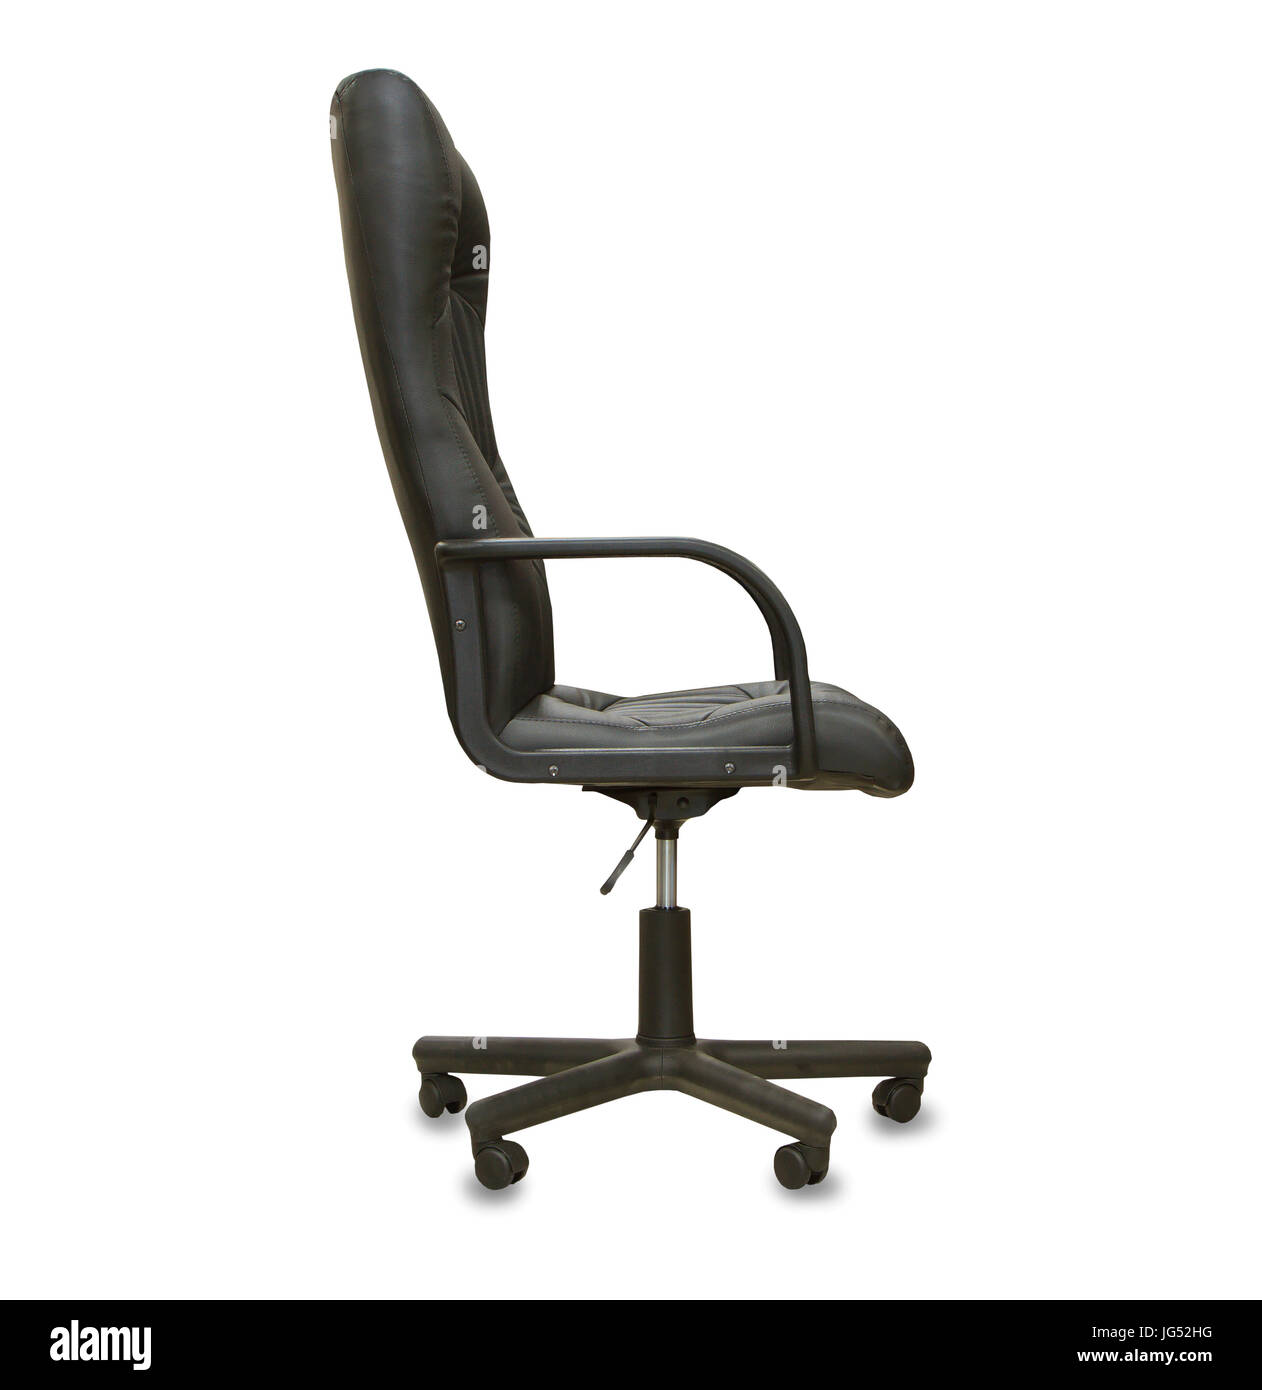 La chaise de bureau de cuir noir. Isolé Banque D'Images